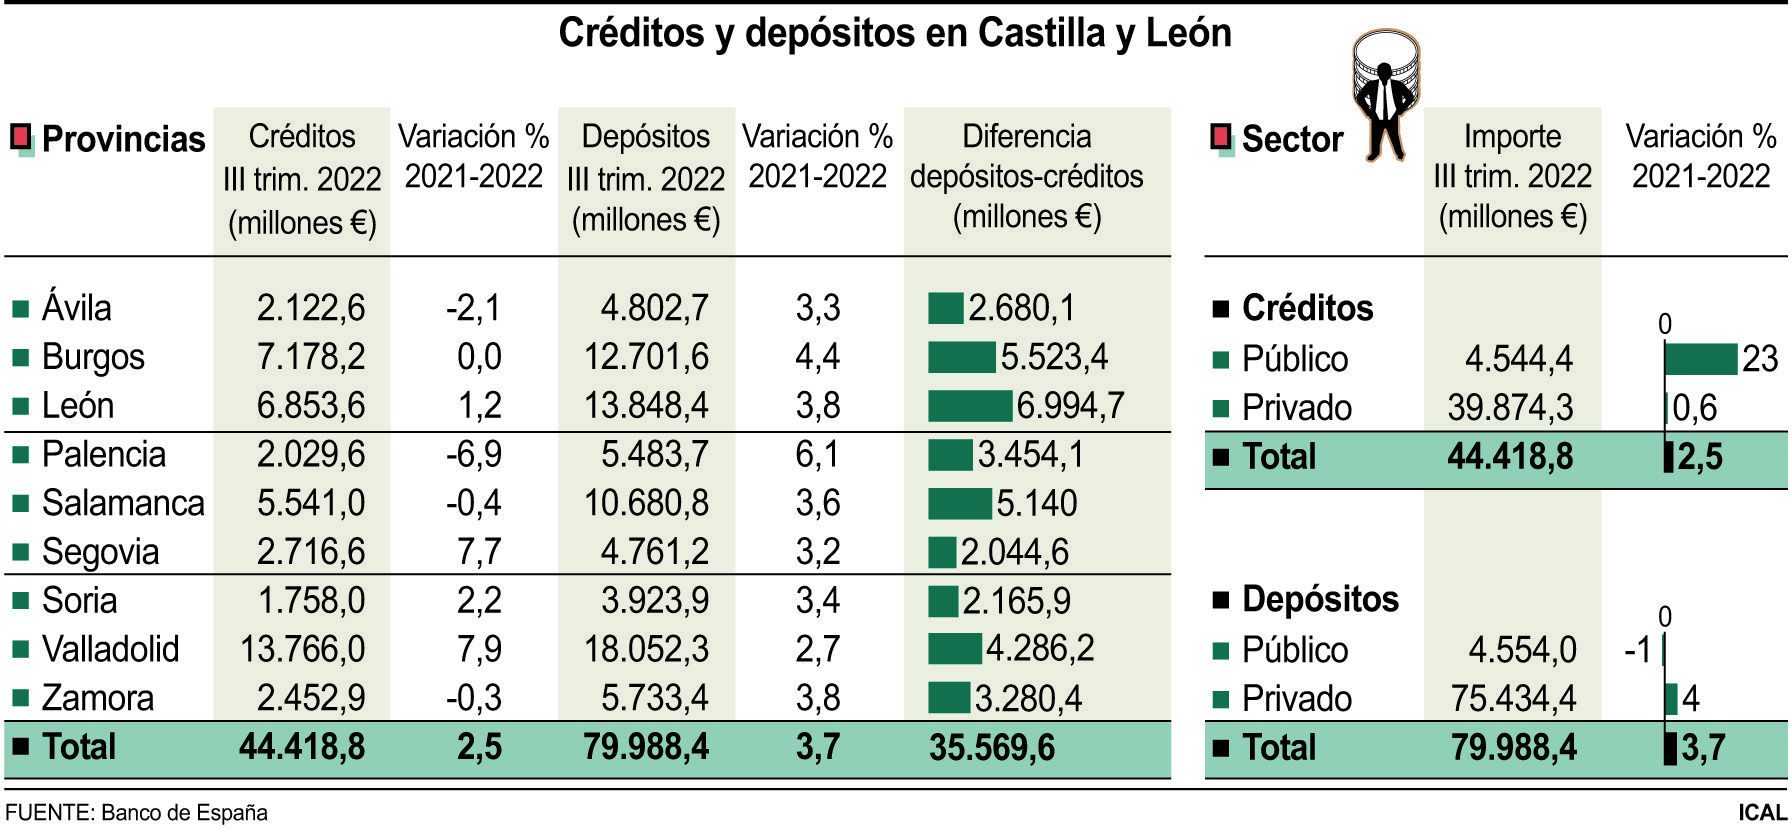 Créditos y depósitos en Castilla y León